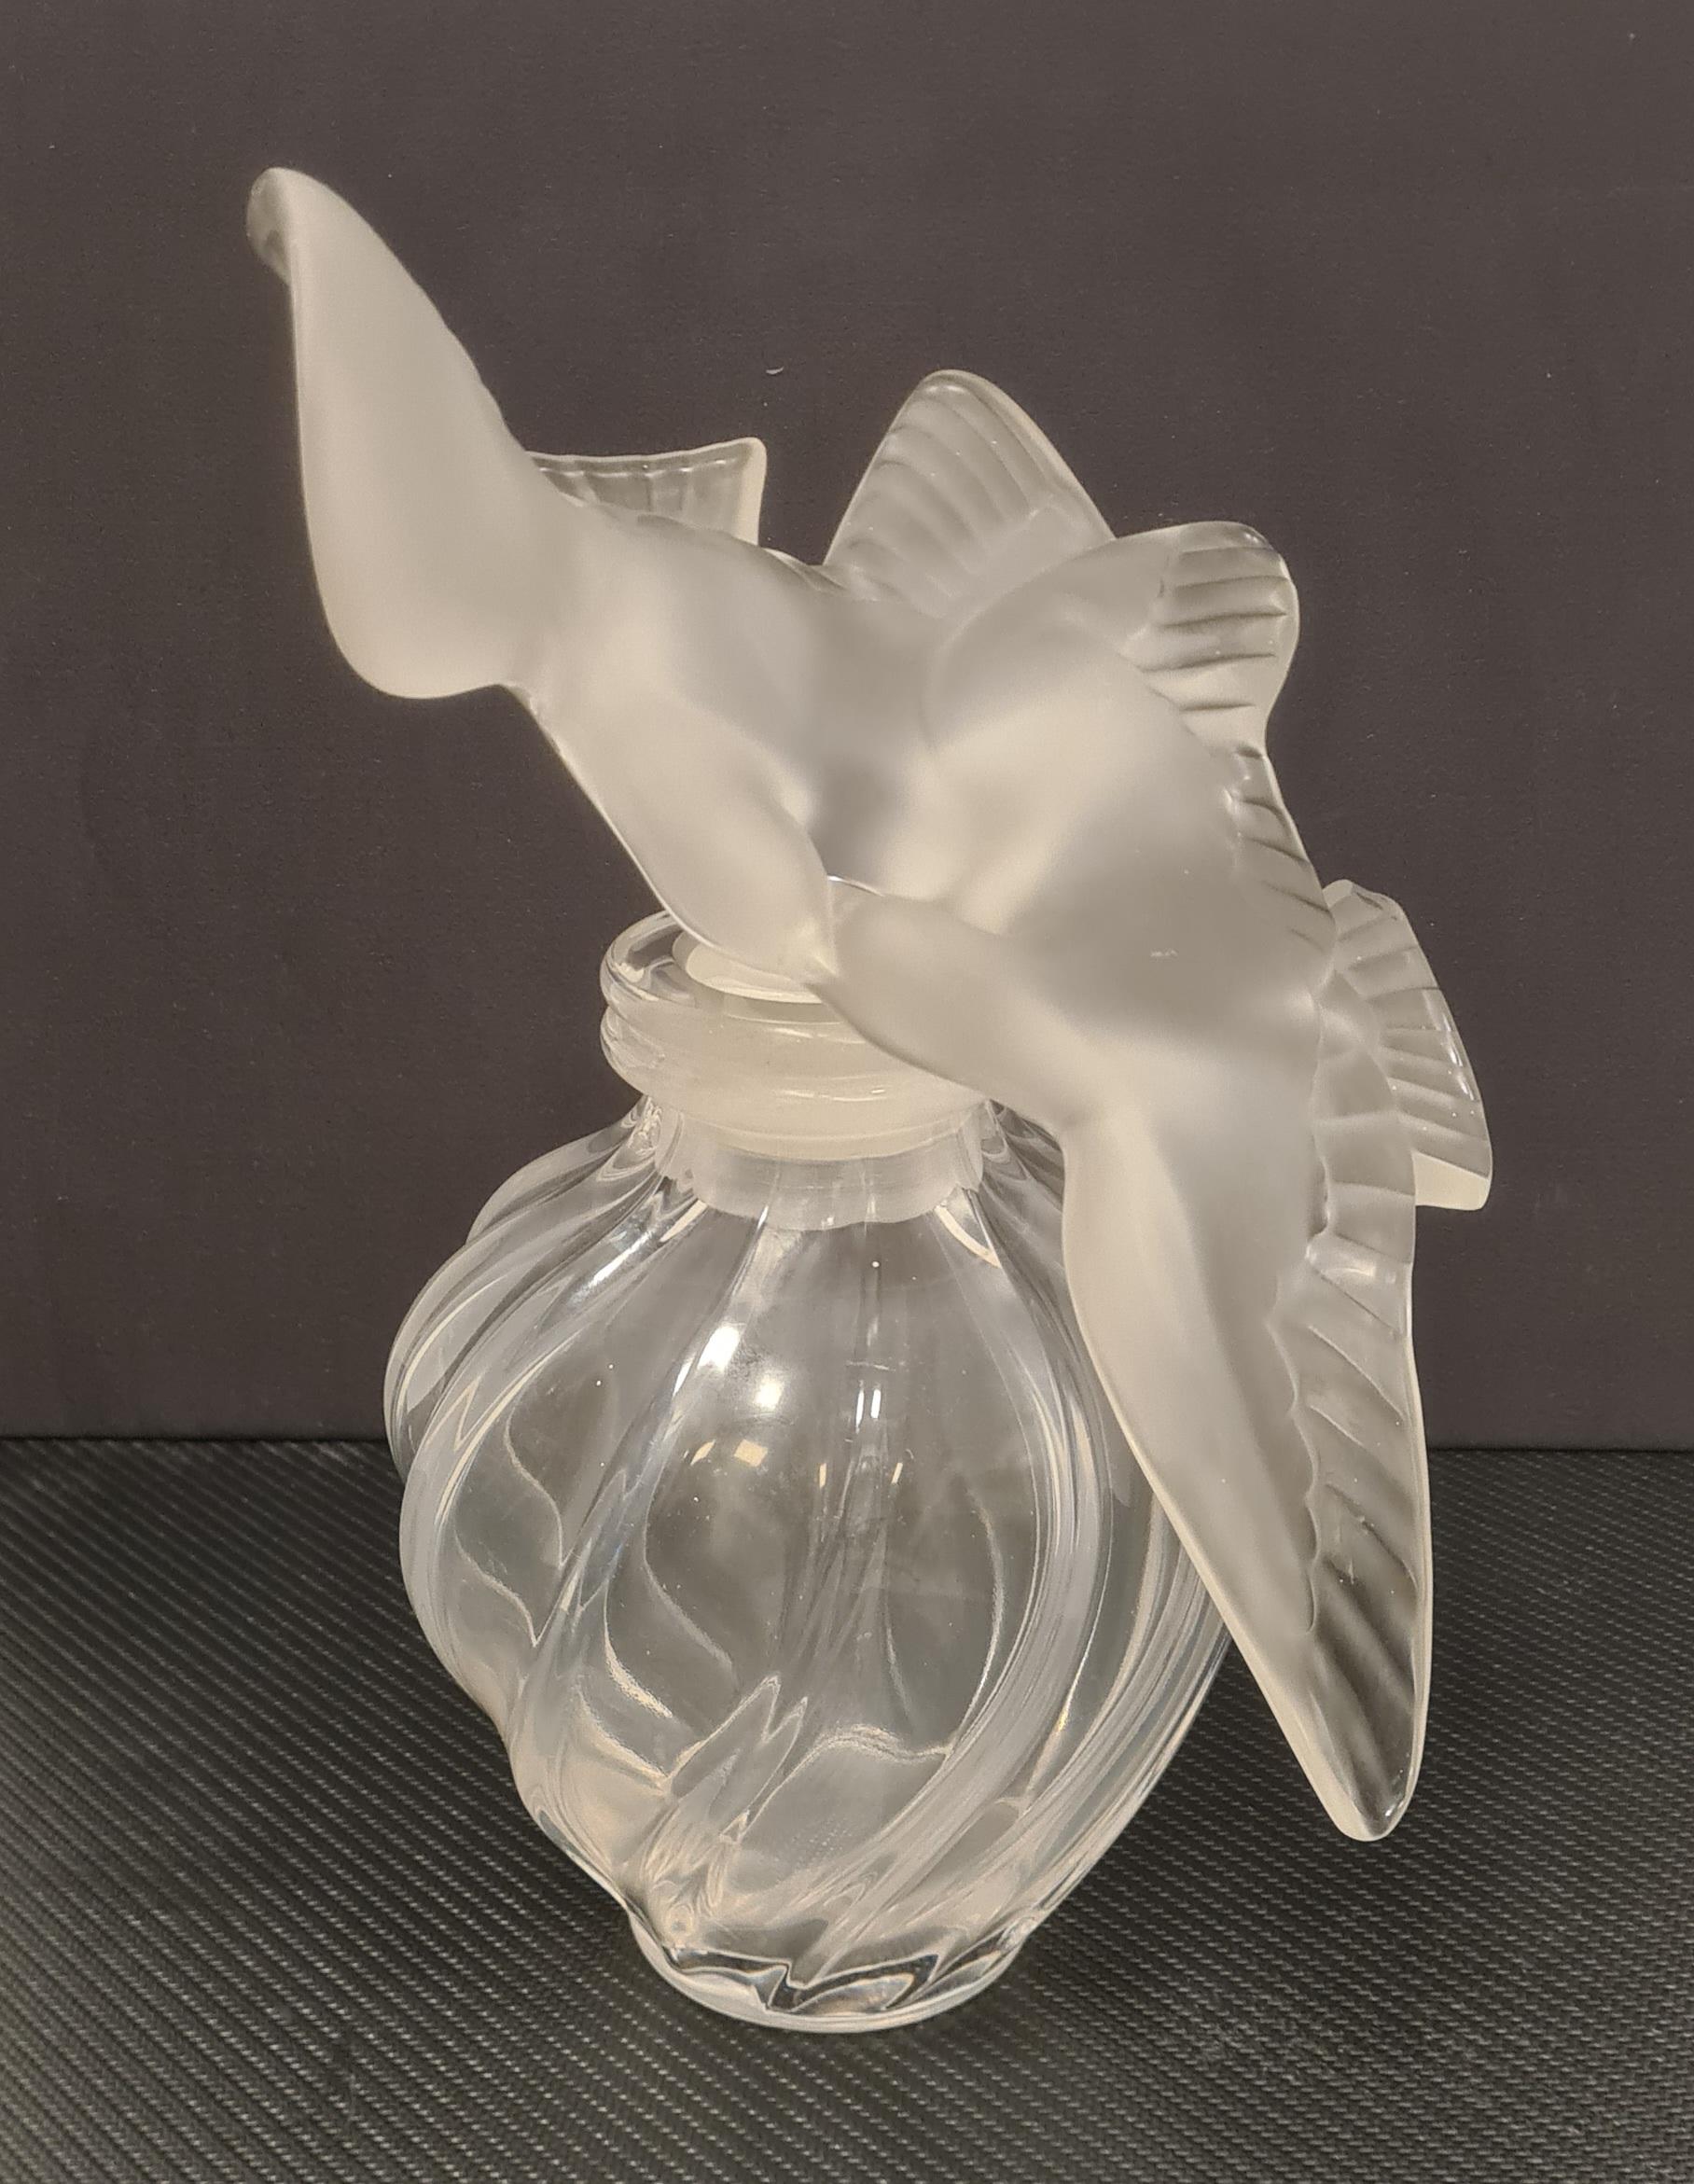 Große Sammlerflasche der französischen Glashütte Lalique.

Ein Flakon mit dem Parfüm 